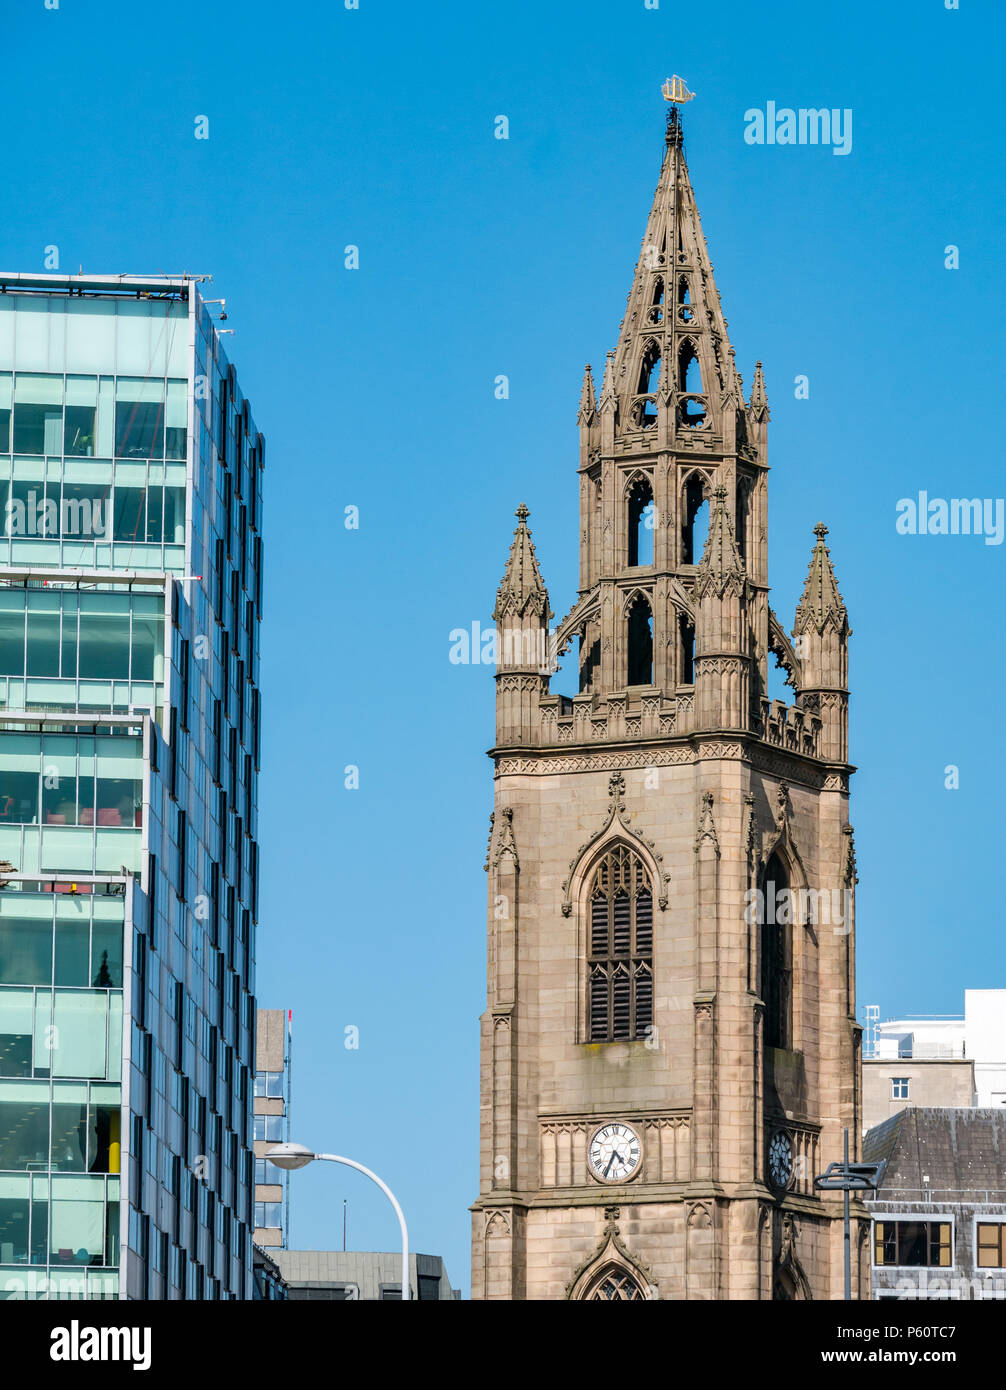 Vista ravvicinata della guglia ornata della chiesa con nave d'oro per la navigazione in cima al cielo blu Chiesa Di Nostra Signora e San Nicola, Liverpool, Inghilterra Foto Stock